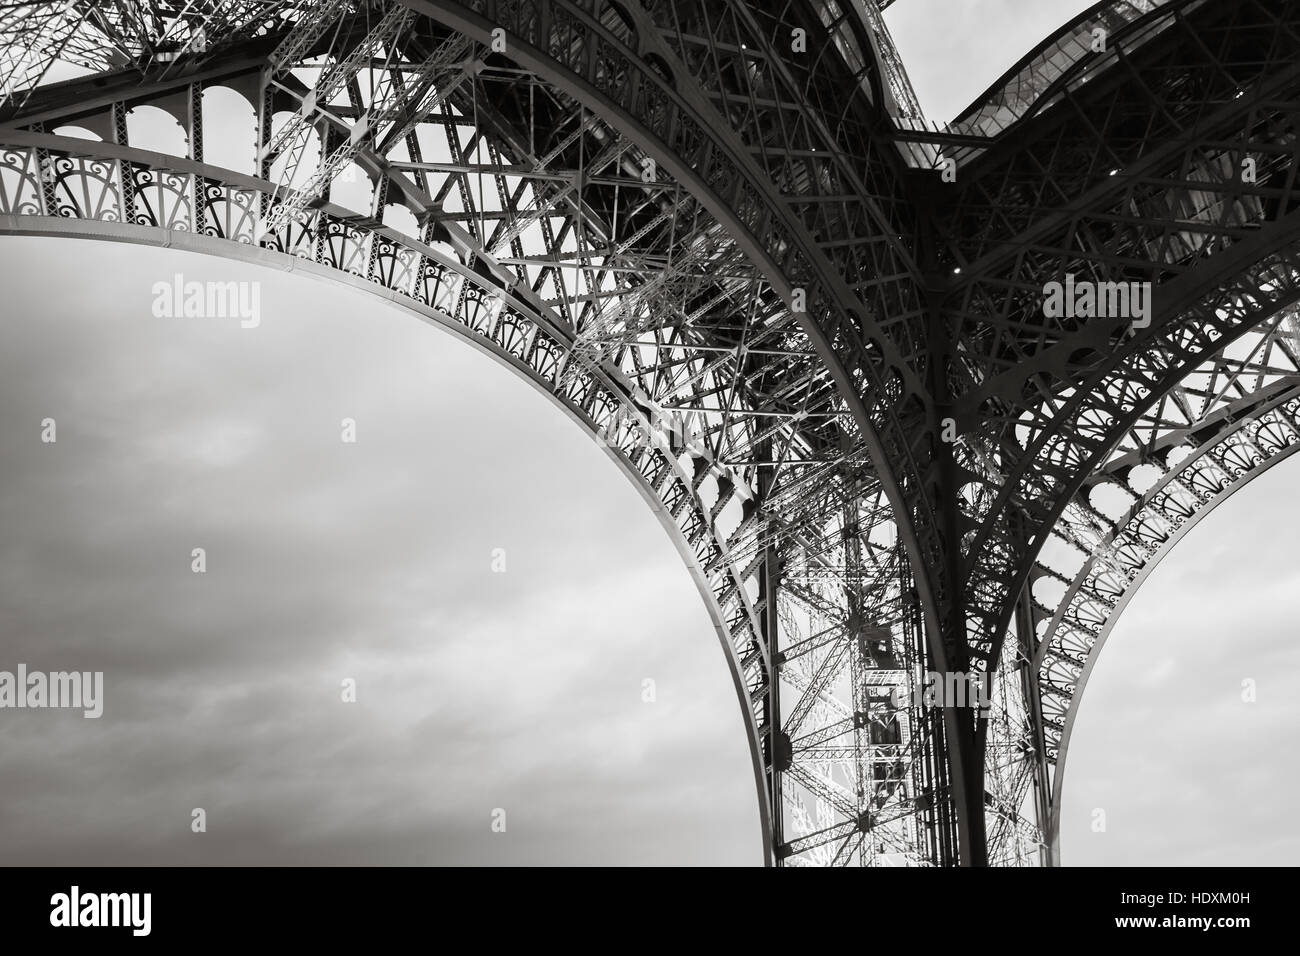 Arco della torre Eiffel cuscinetti, il più famoso punto di riferimento di Parigi, Francia. Foto in bianco e nero con uno stile rétro effetto Foto Stock